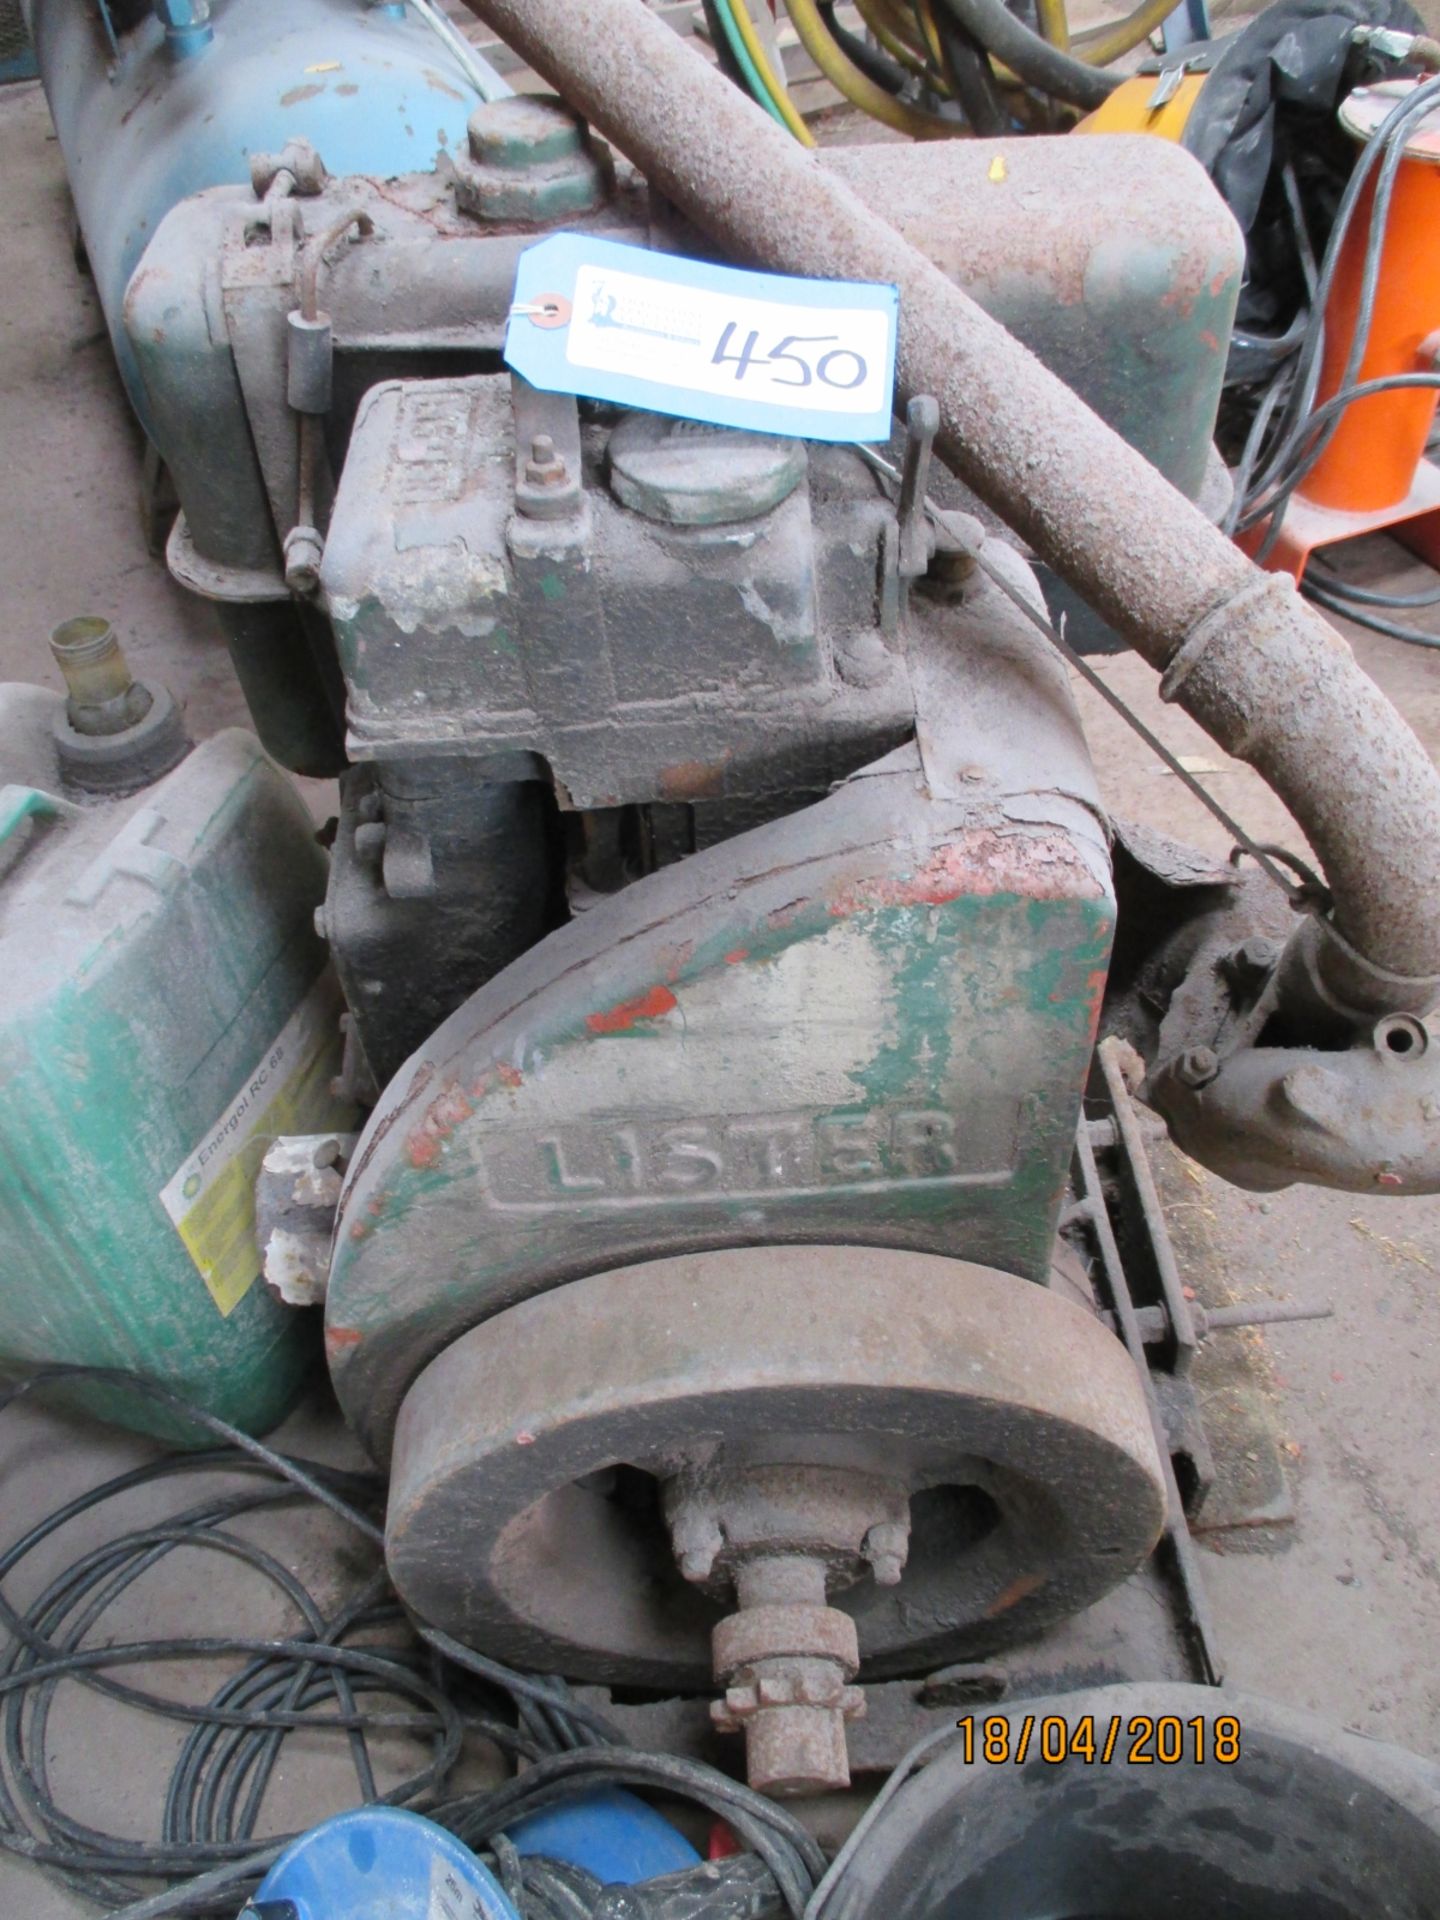 1 No. Lister Petrol Stationary Engine